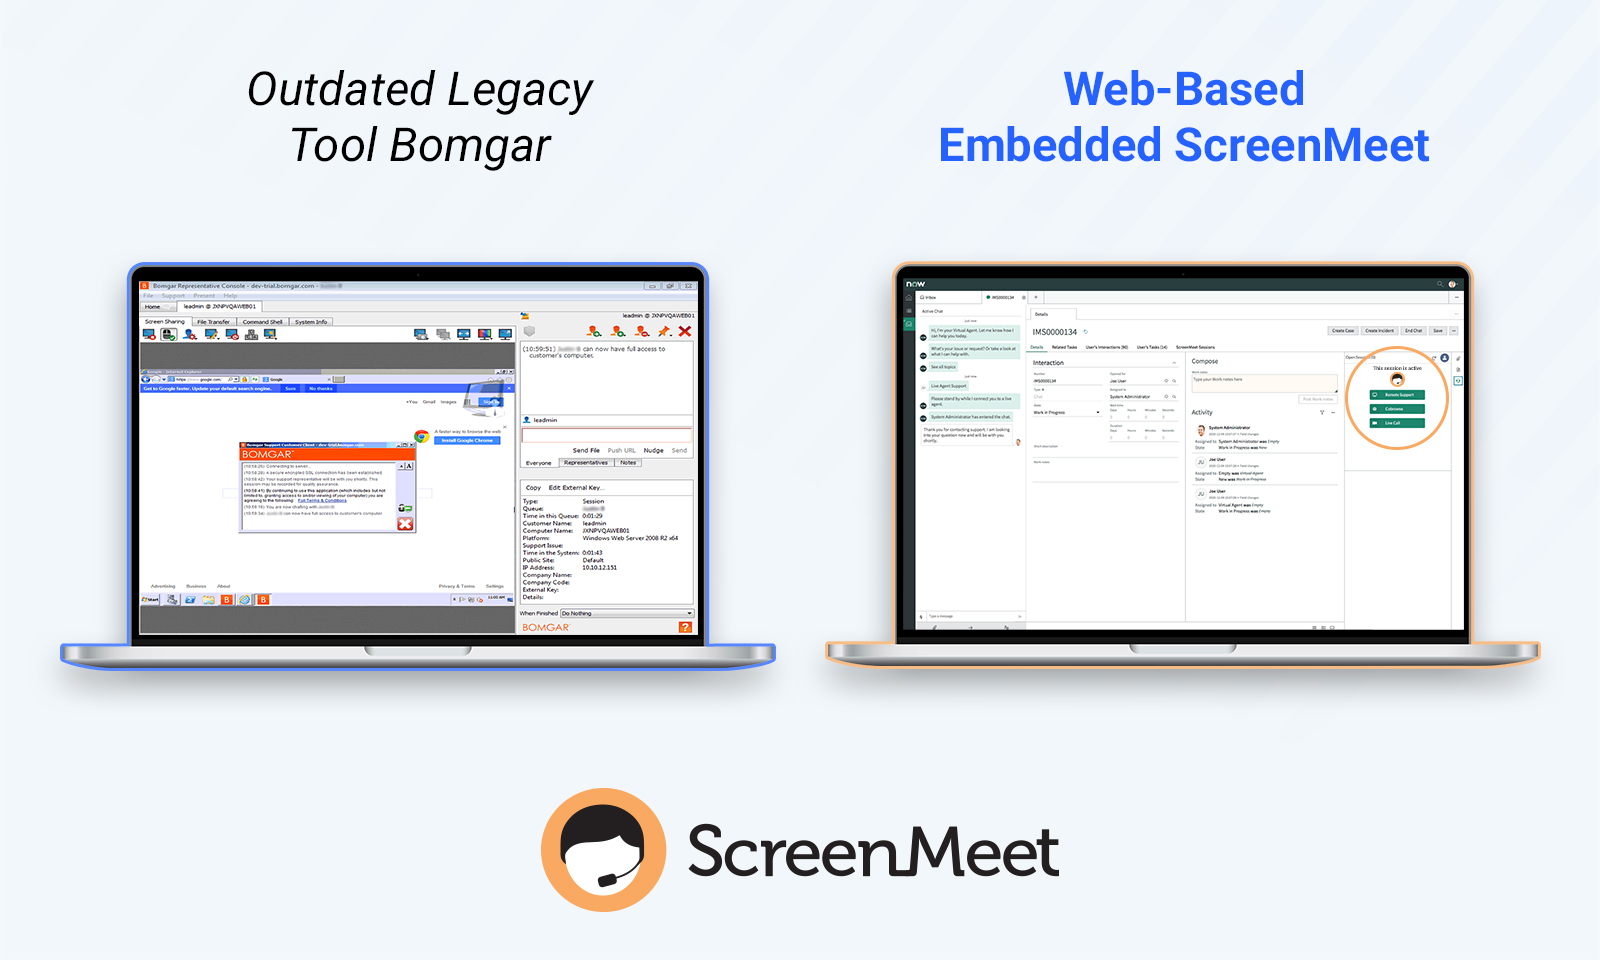 GUI Comparison Bomgar versus Embedded ScreenMeet